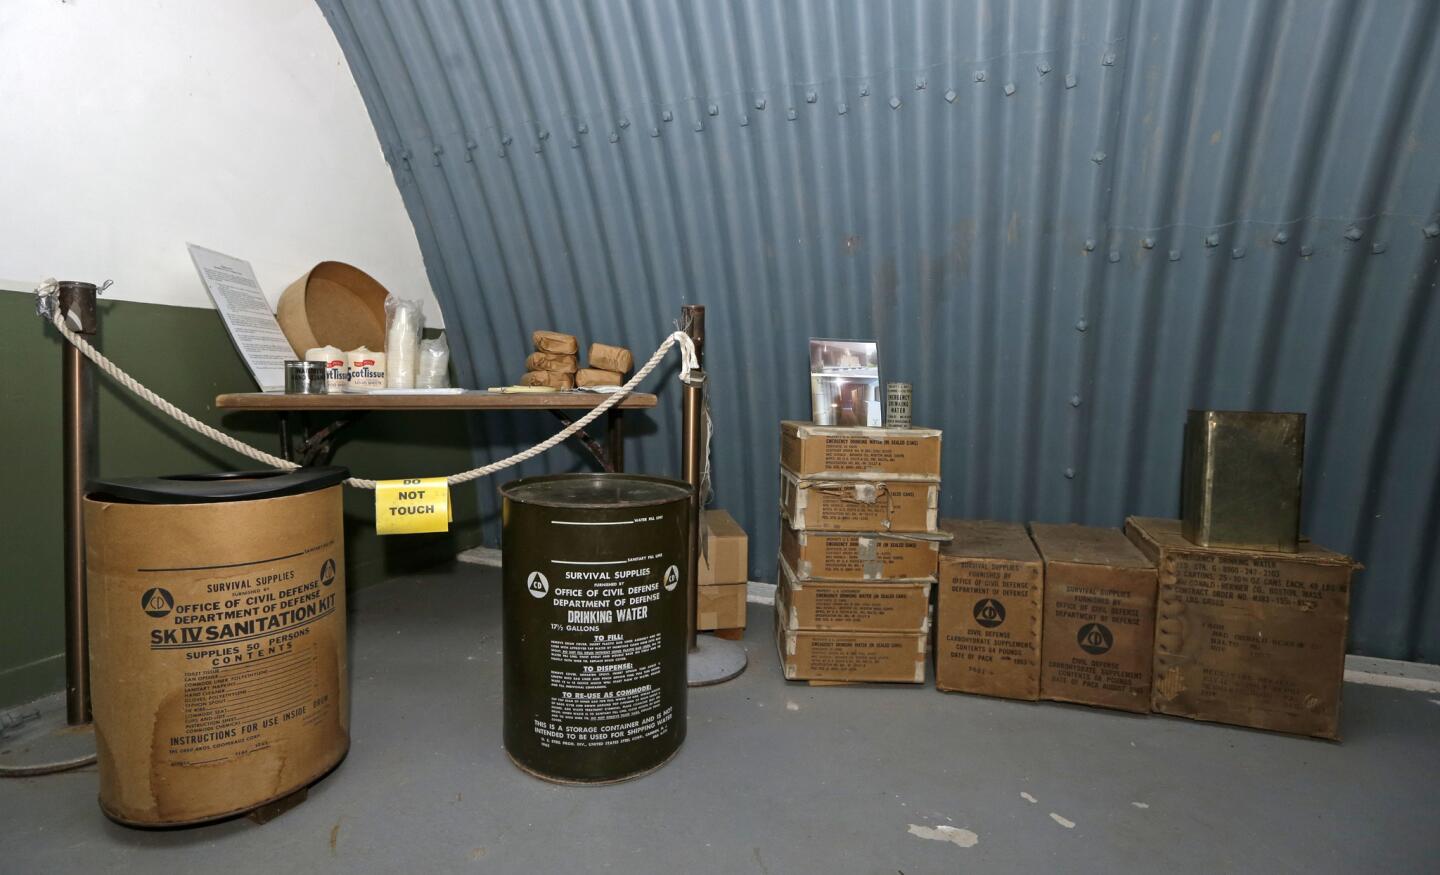 Kennedy's bunker